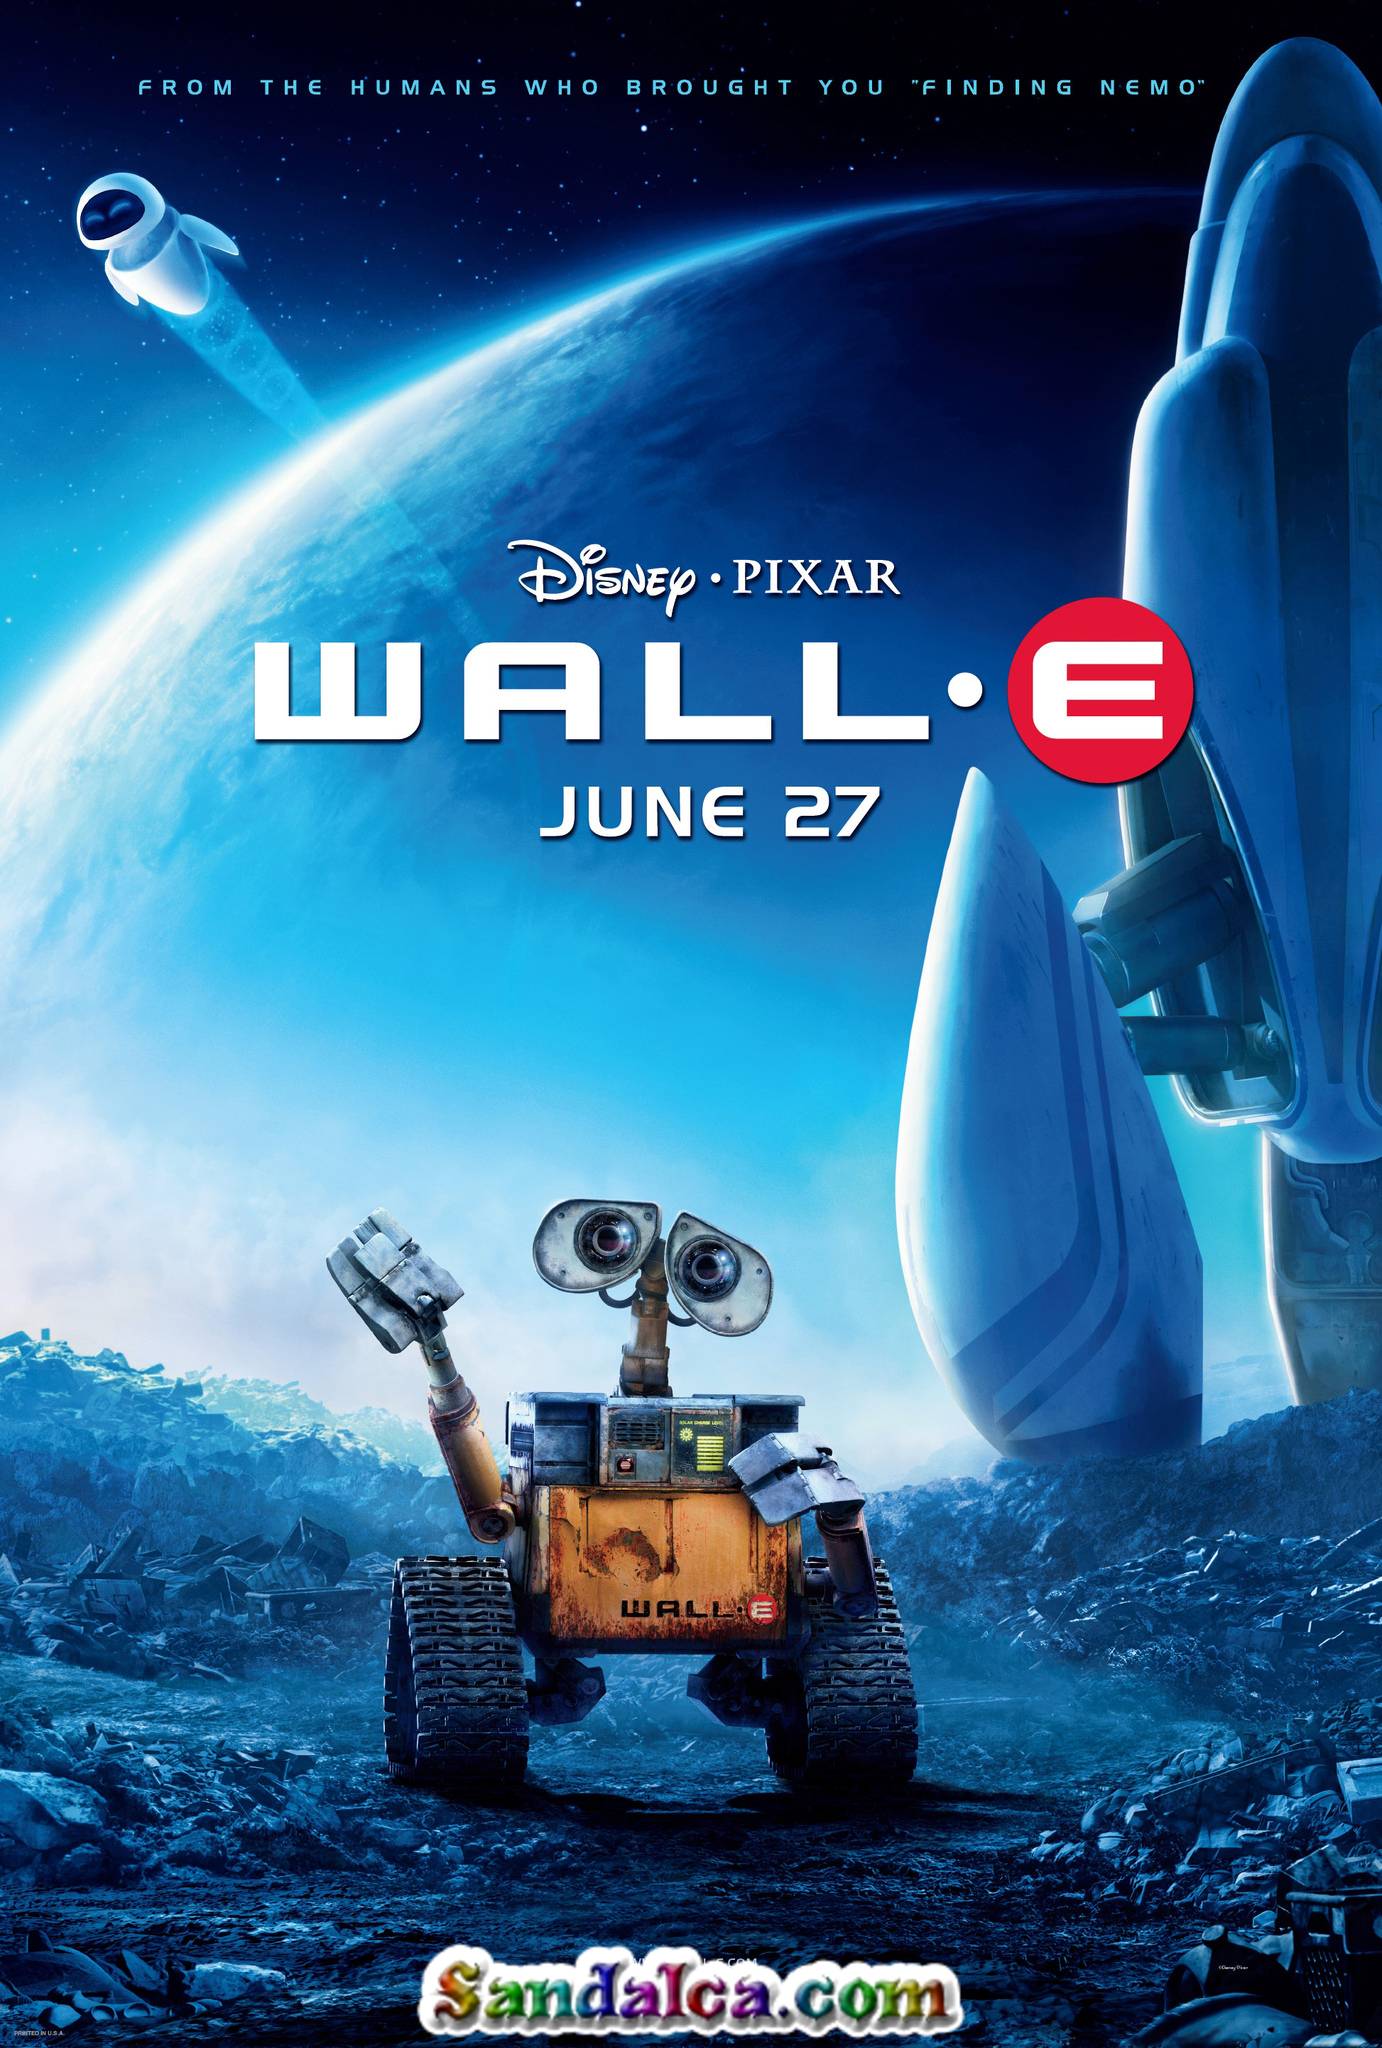 VOL-İ - WALL-E Türkçe Dublaj indir | XviD | 2008